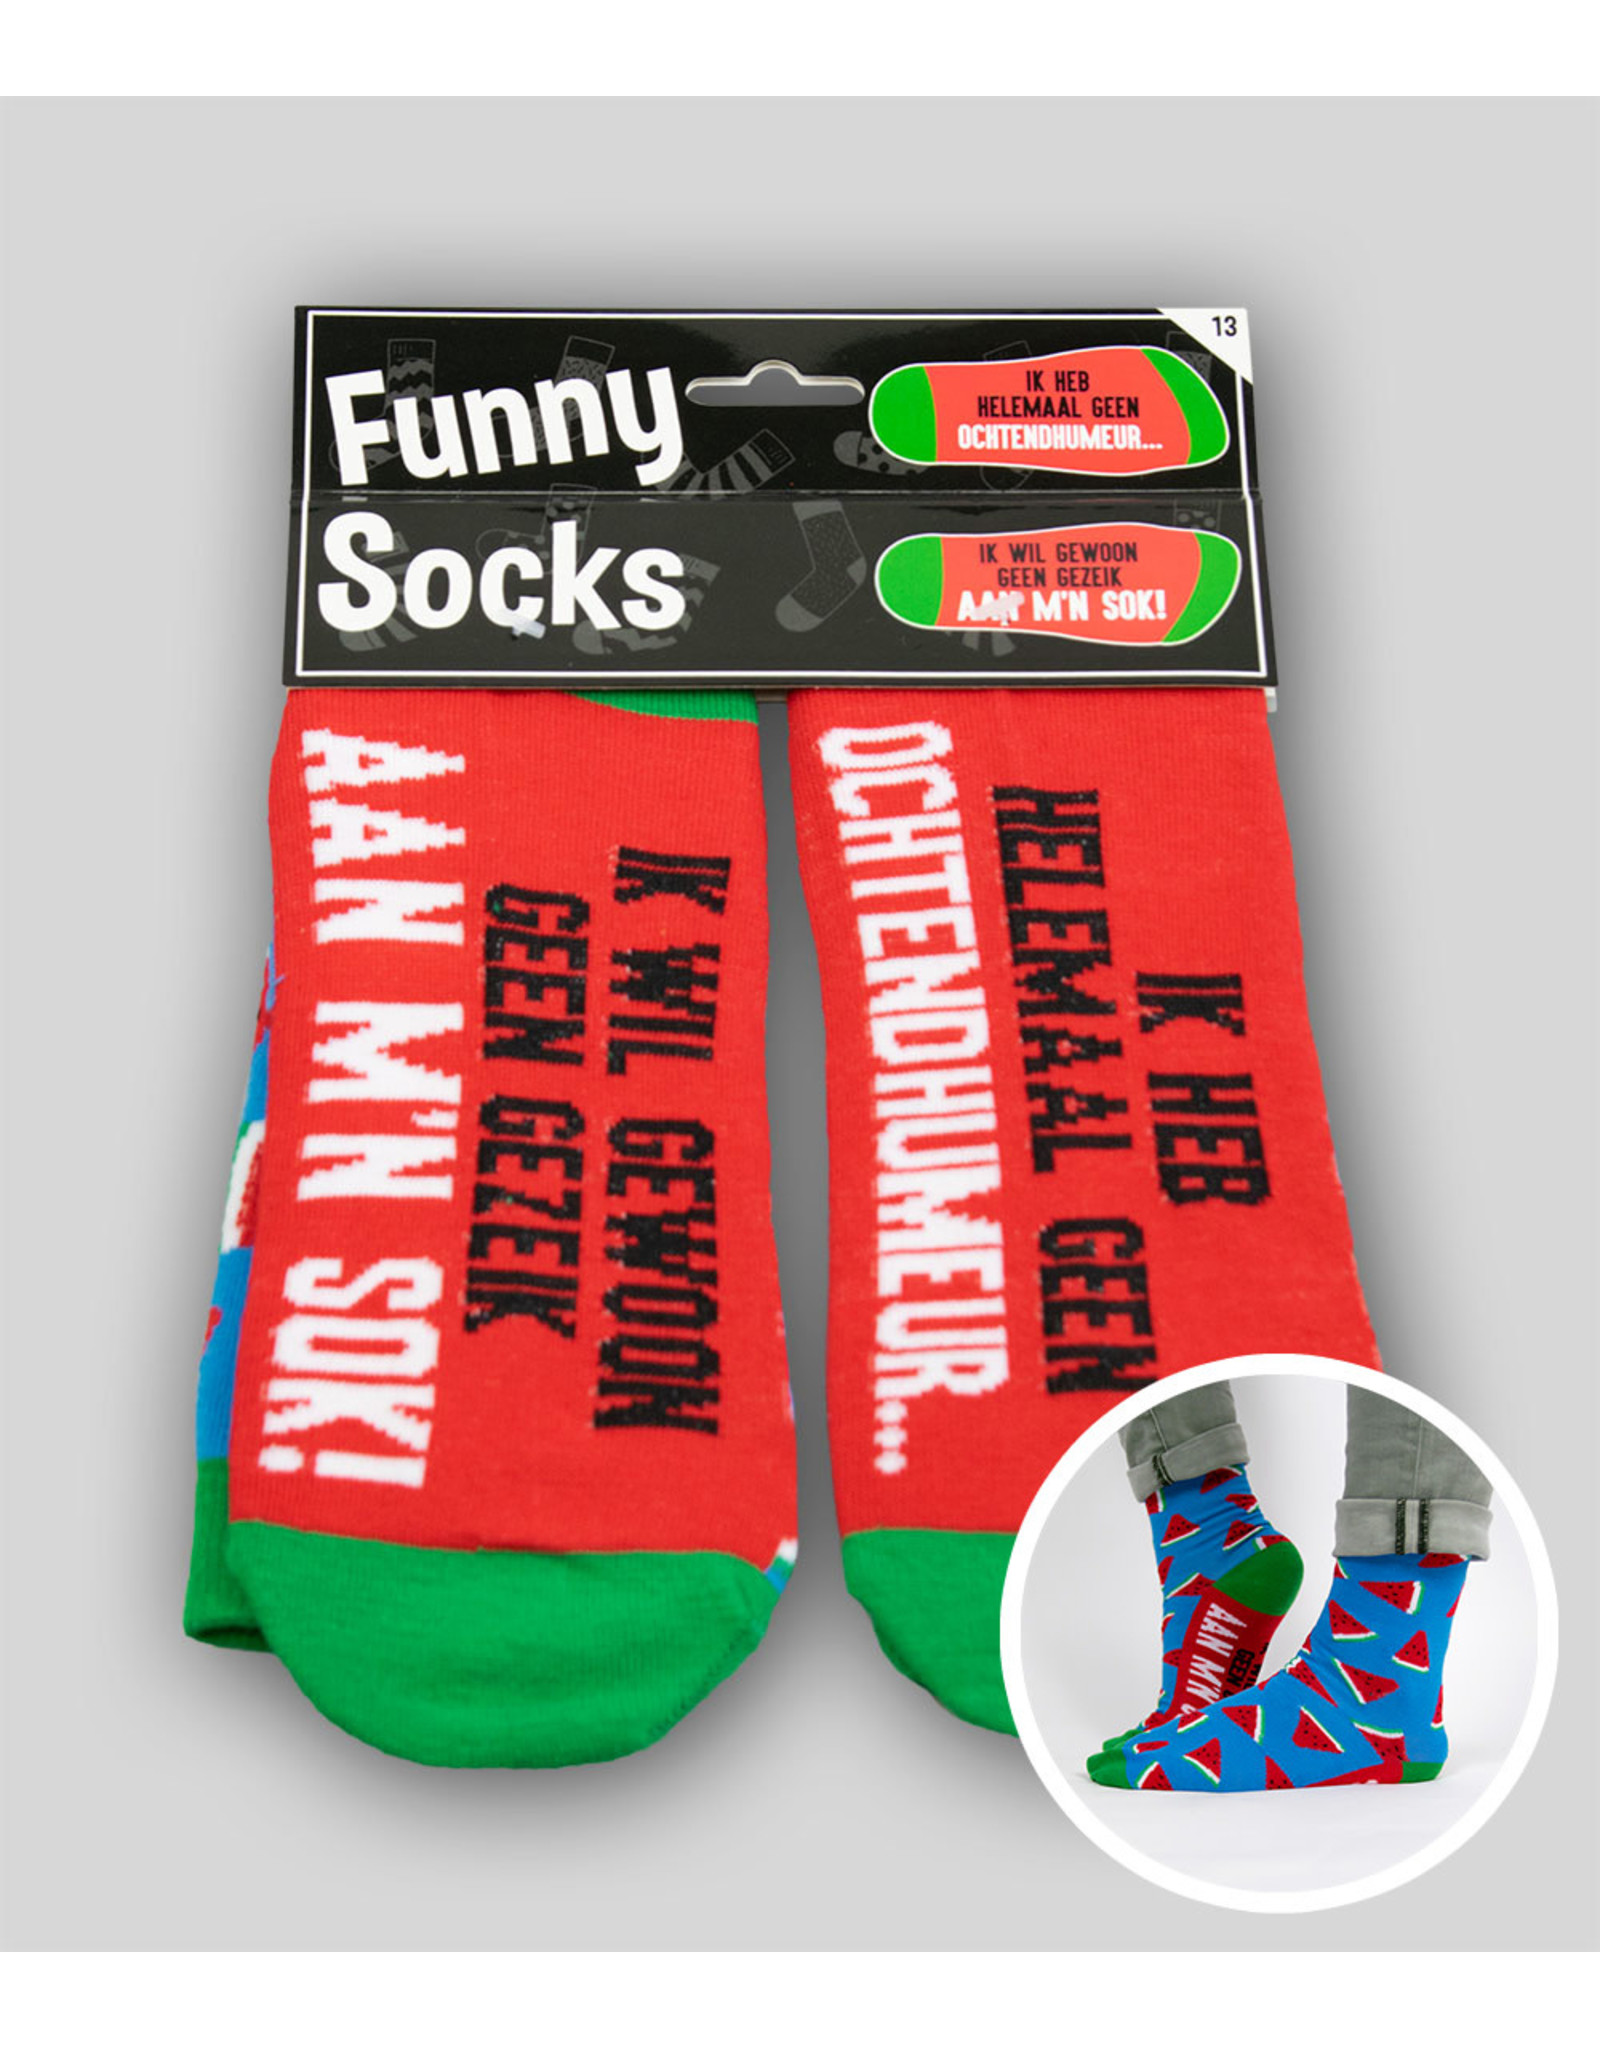 Funny socks Ochtendhumeur